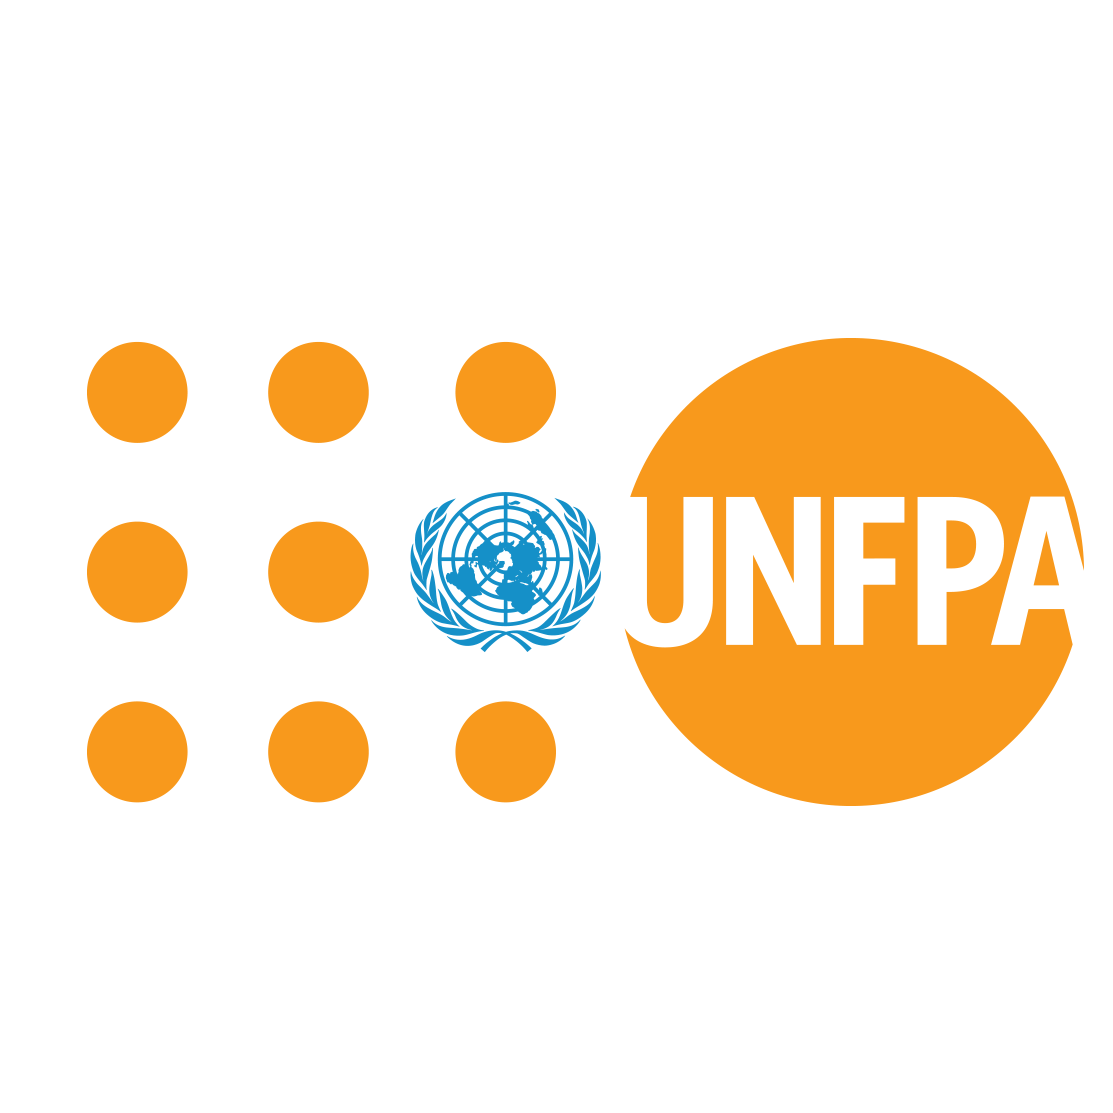 საგანგებო მდგომარეობა და ჰუმანიტარული დახმარება (UNFPA)